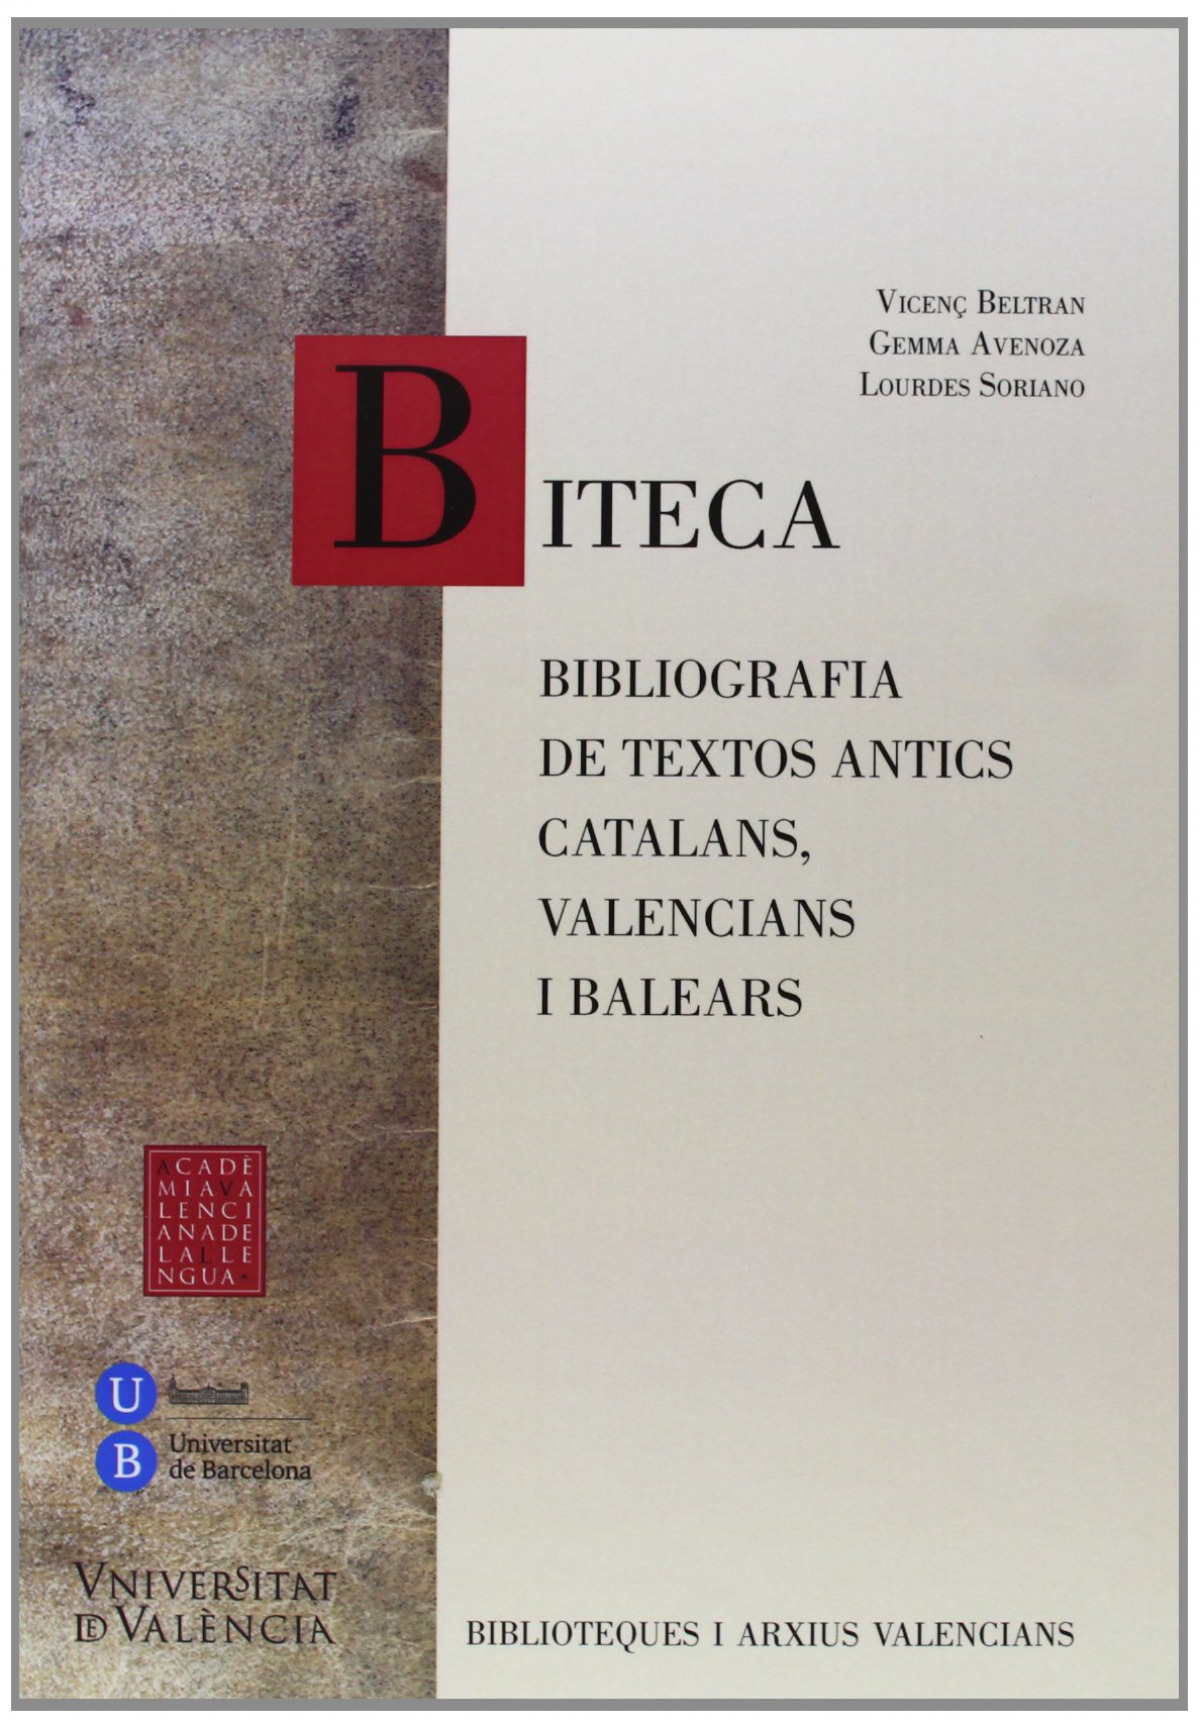 BITECA. Bibliografia de textos antics, catalans, valencians - Vicenç Beltran, Gemma Avenoza, Lourdes S